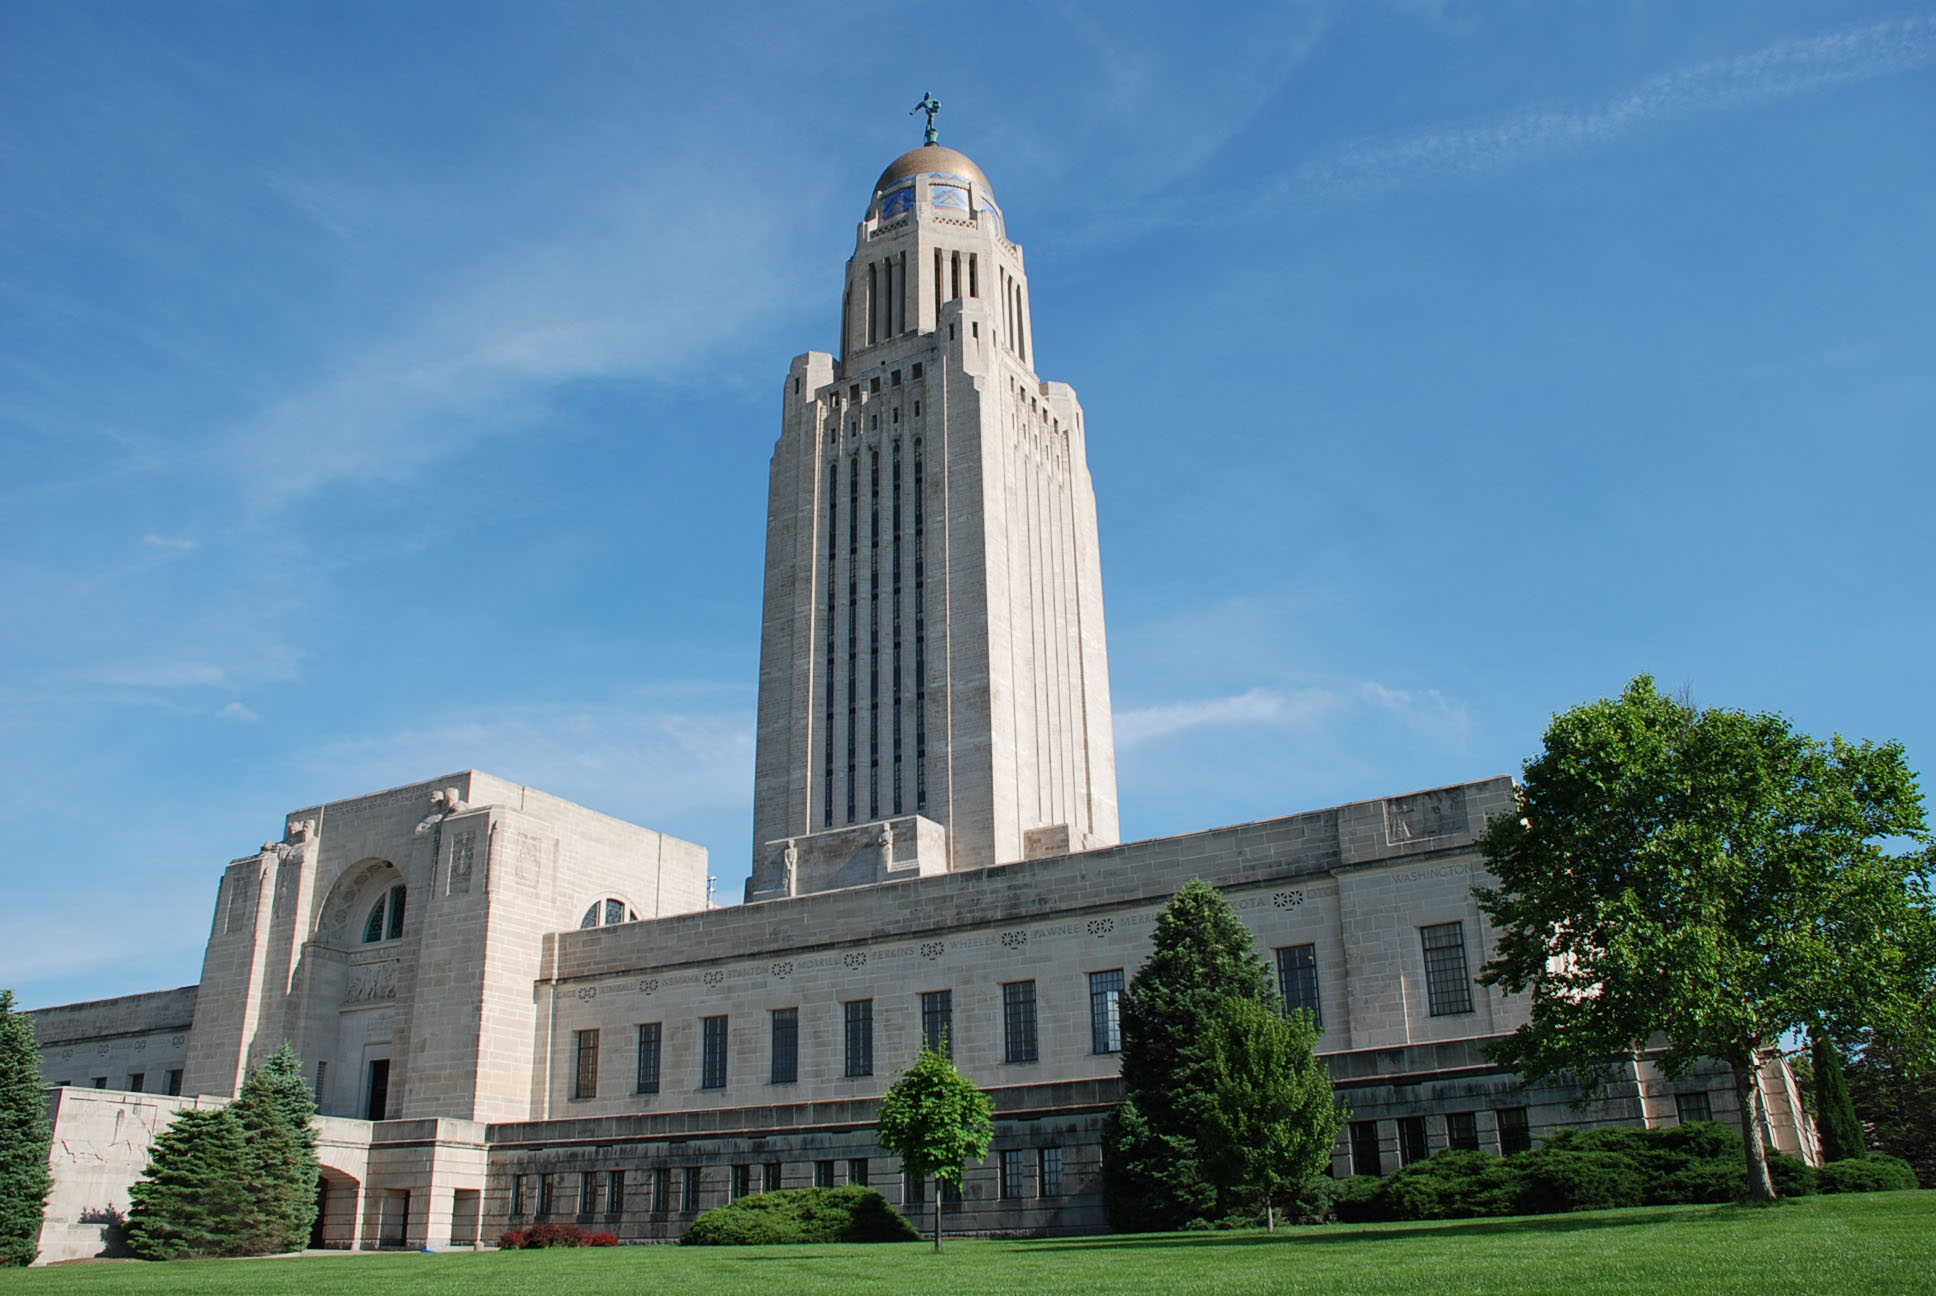 The Nebraska state capitol building in Lincoln, Nebraska.